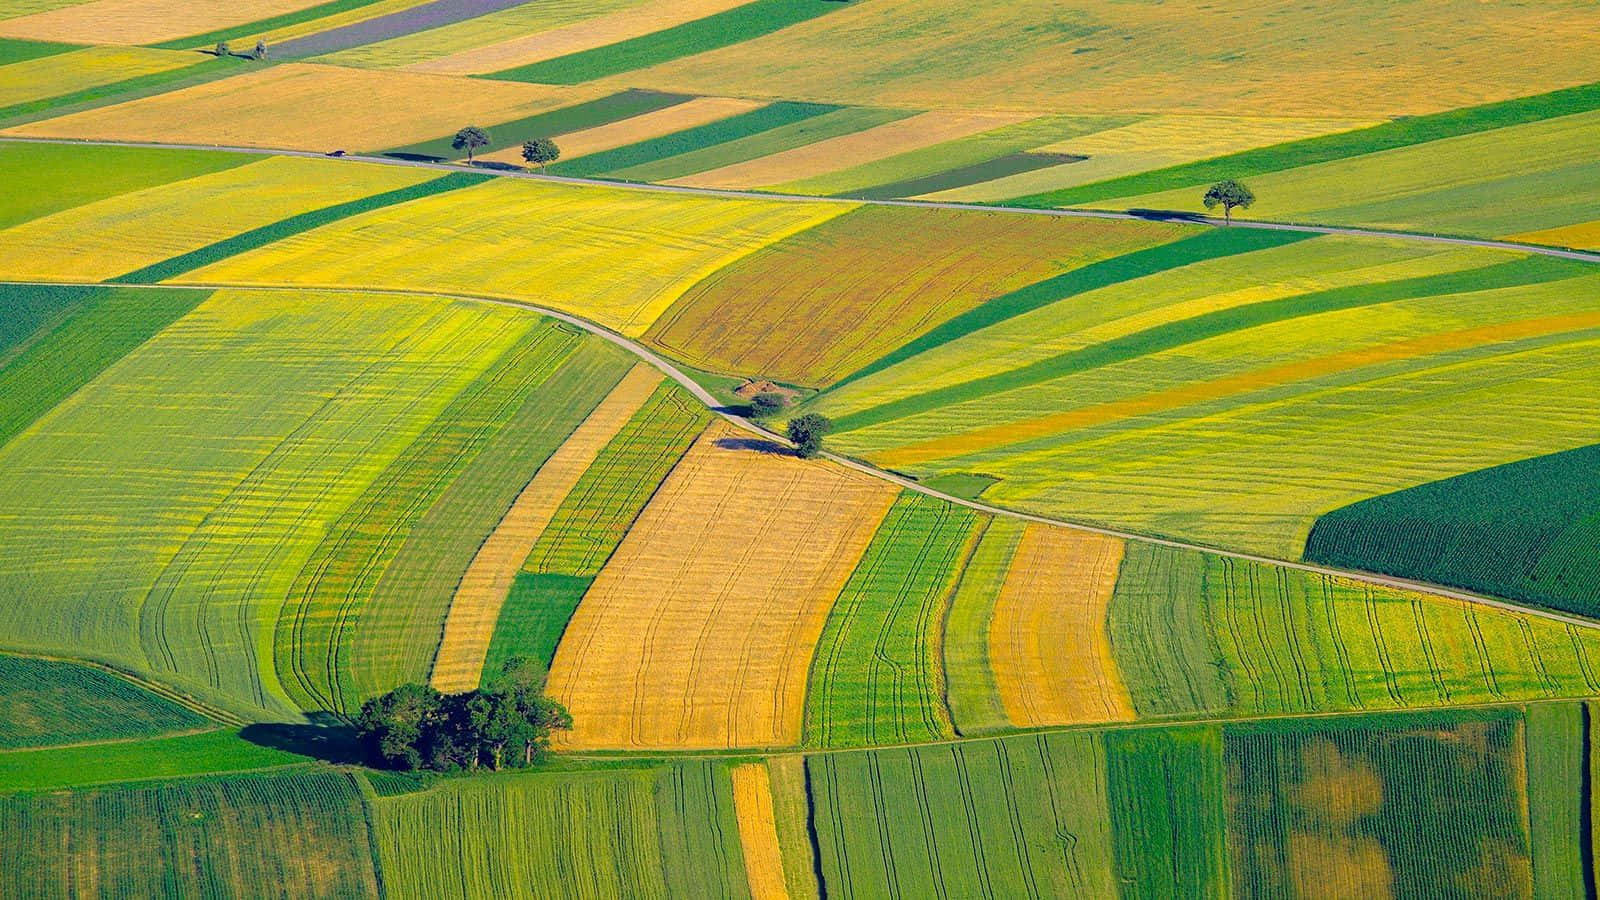 Etbillede Af Et Grønt Landbrugslandskab.